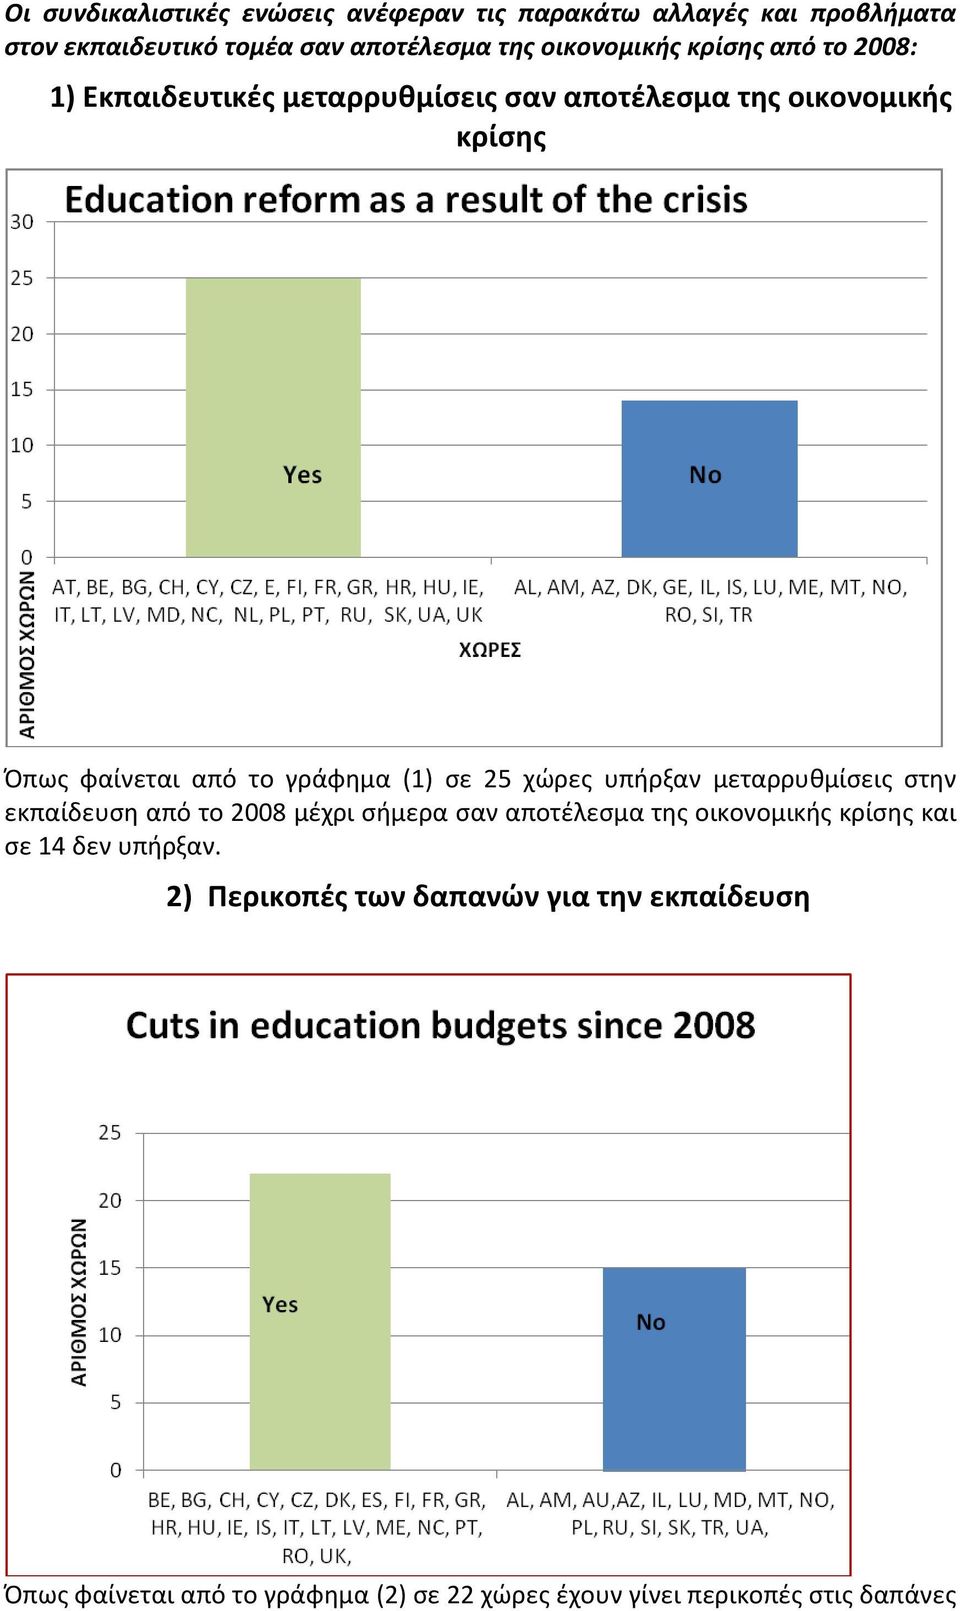 25 χώρες υπήρξαν μεταρρυθμίσεις στην εκπαίδευση από το 2008 μέχρι σήμερα σαν αποτέλεσμα της οικονομικής κρίσης και σε 14 δεν